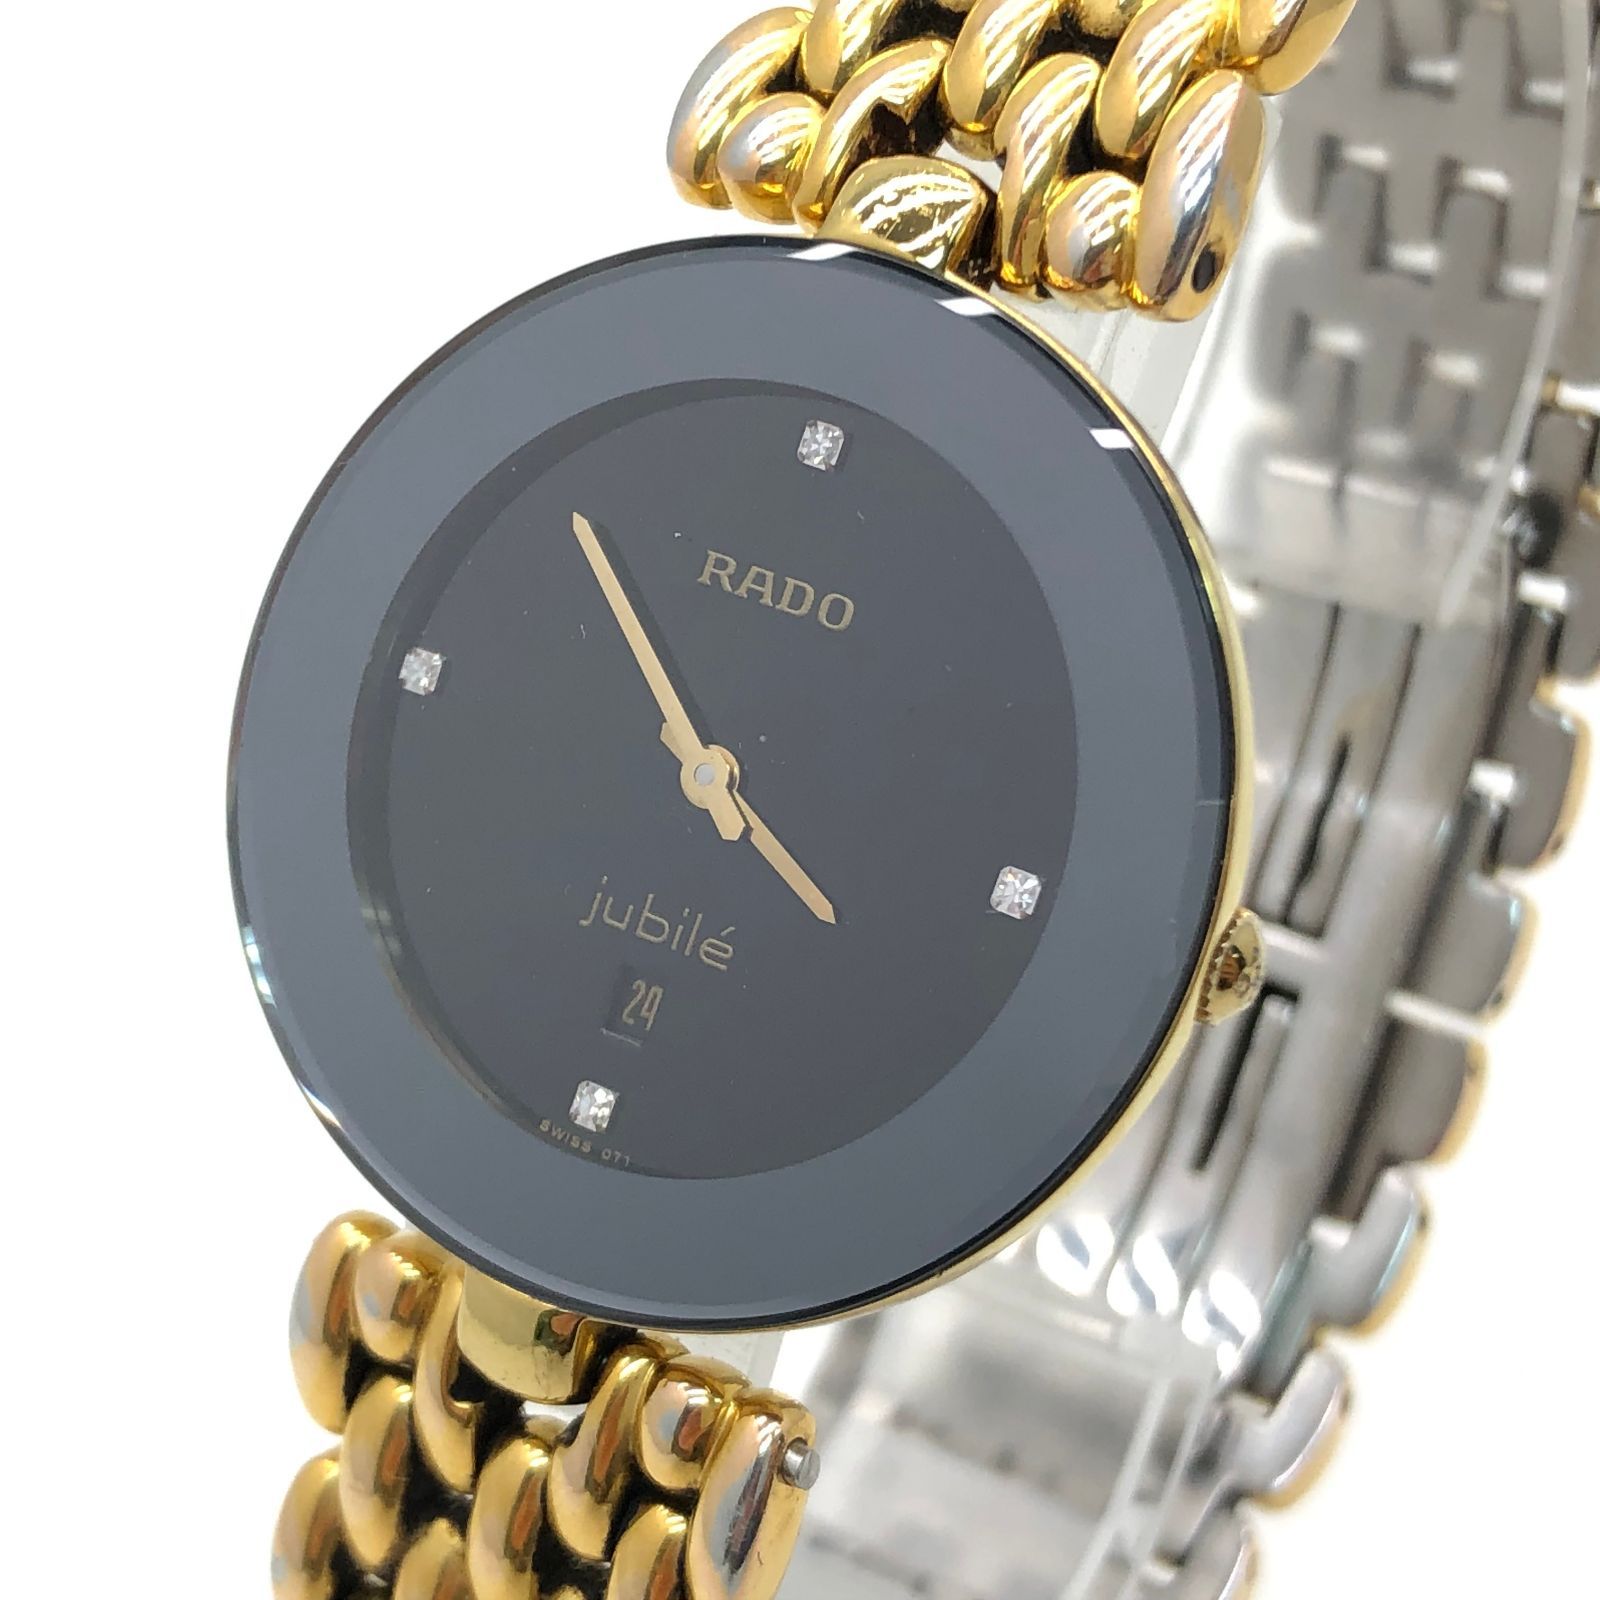 RADO ラドー ジュビリー 4Pダイヤ 160.3677.2 メンズ 腕時計 ブラック